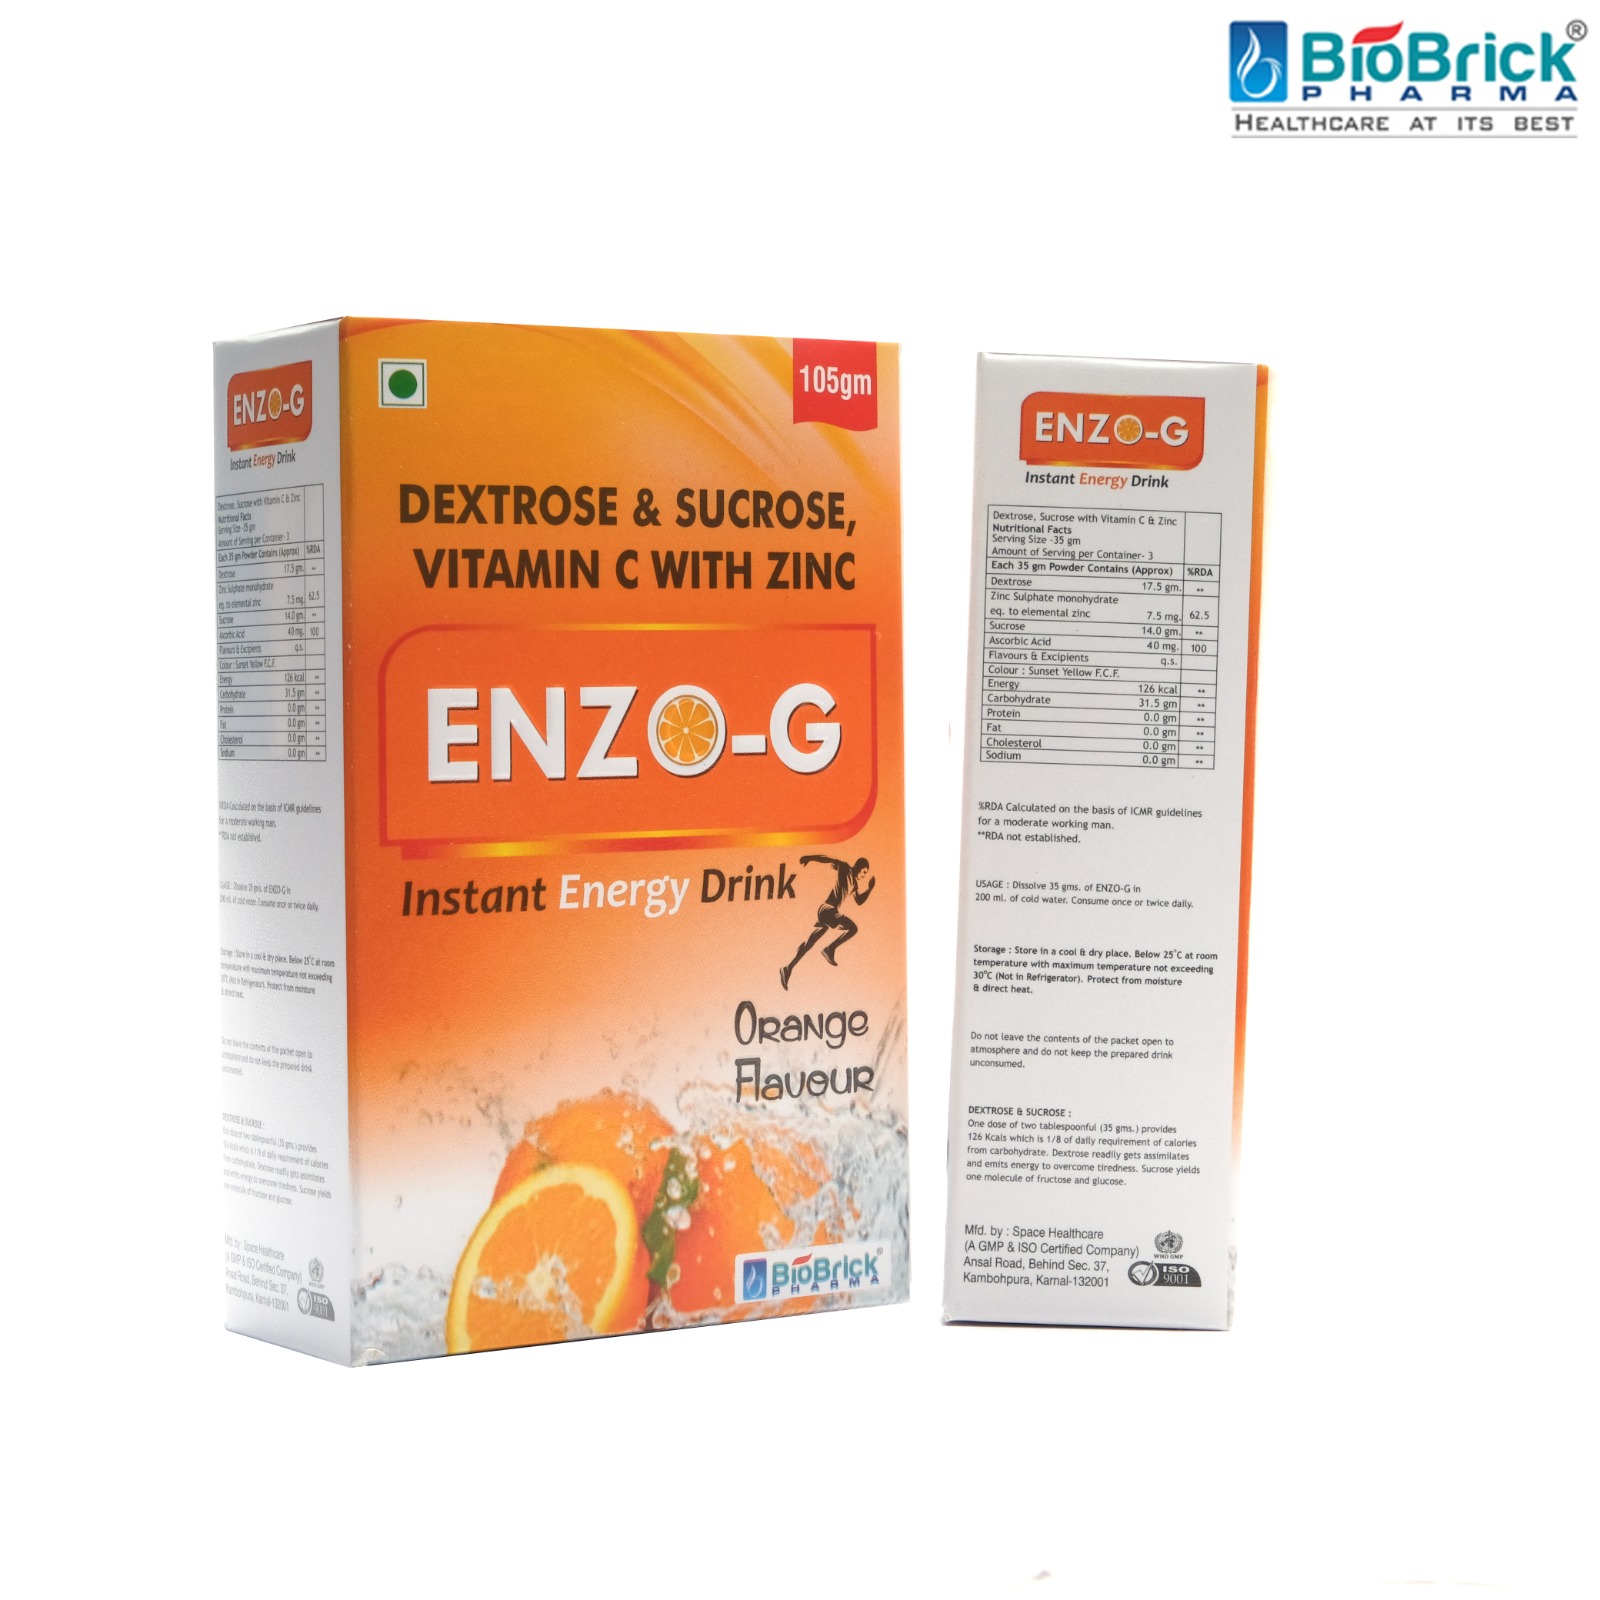 ENZO-G Energy Drink